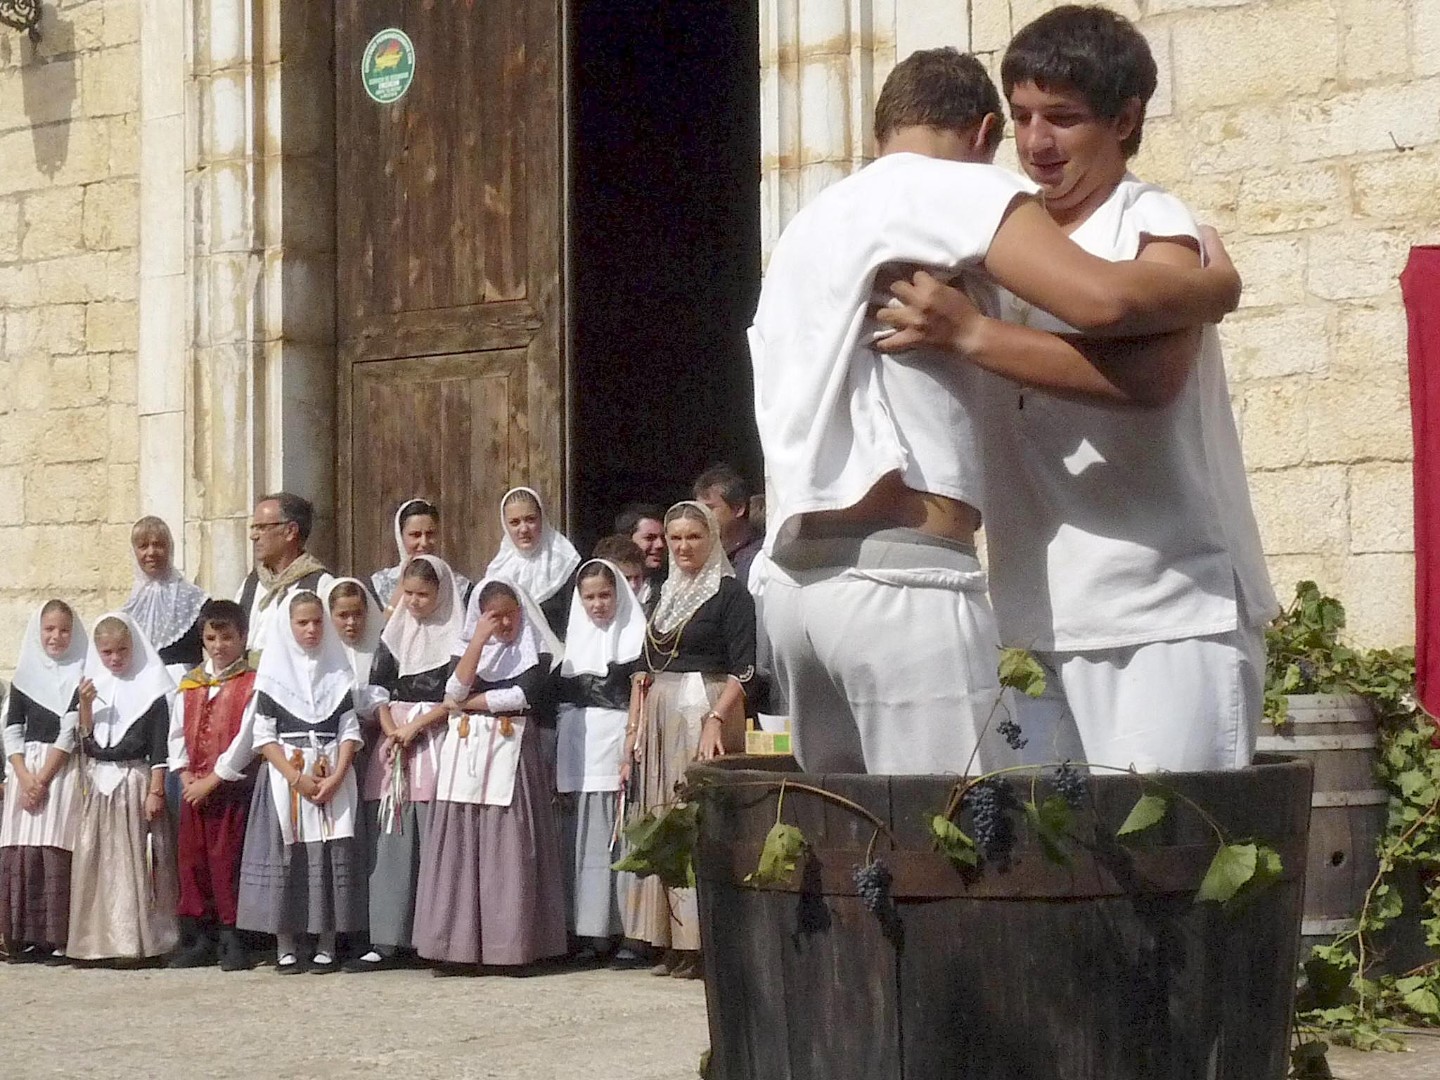 Festa des Vermar в деревне Биниссалем.Участники виноградной битвы в белых одеждах